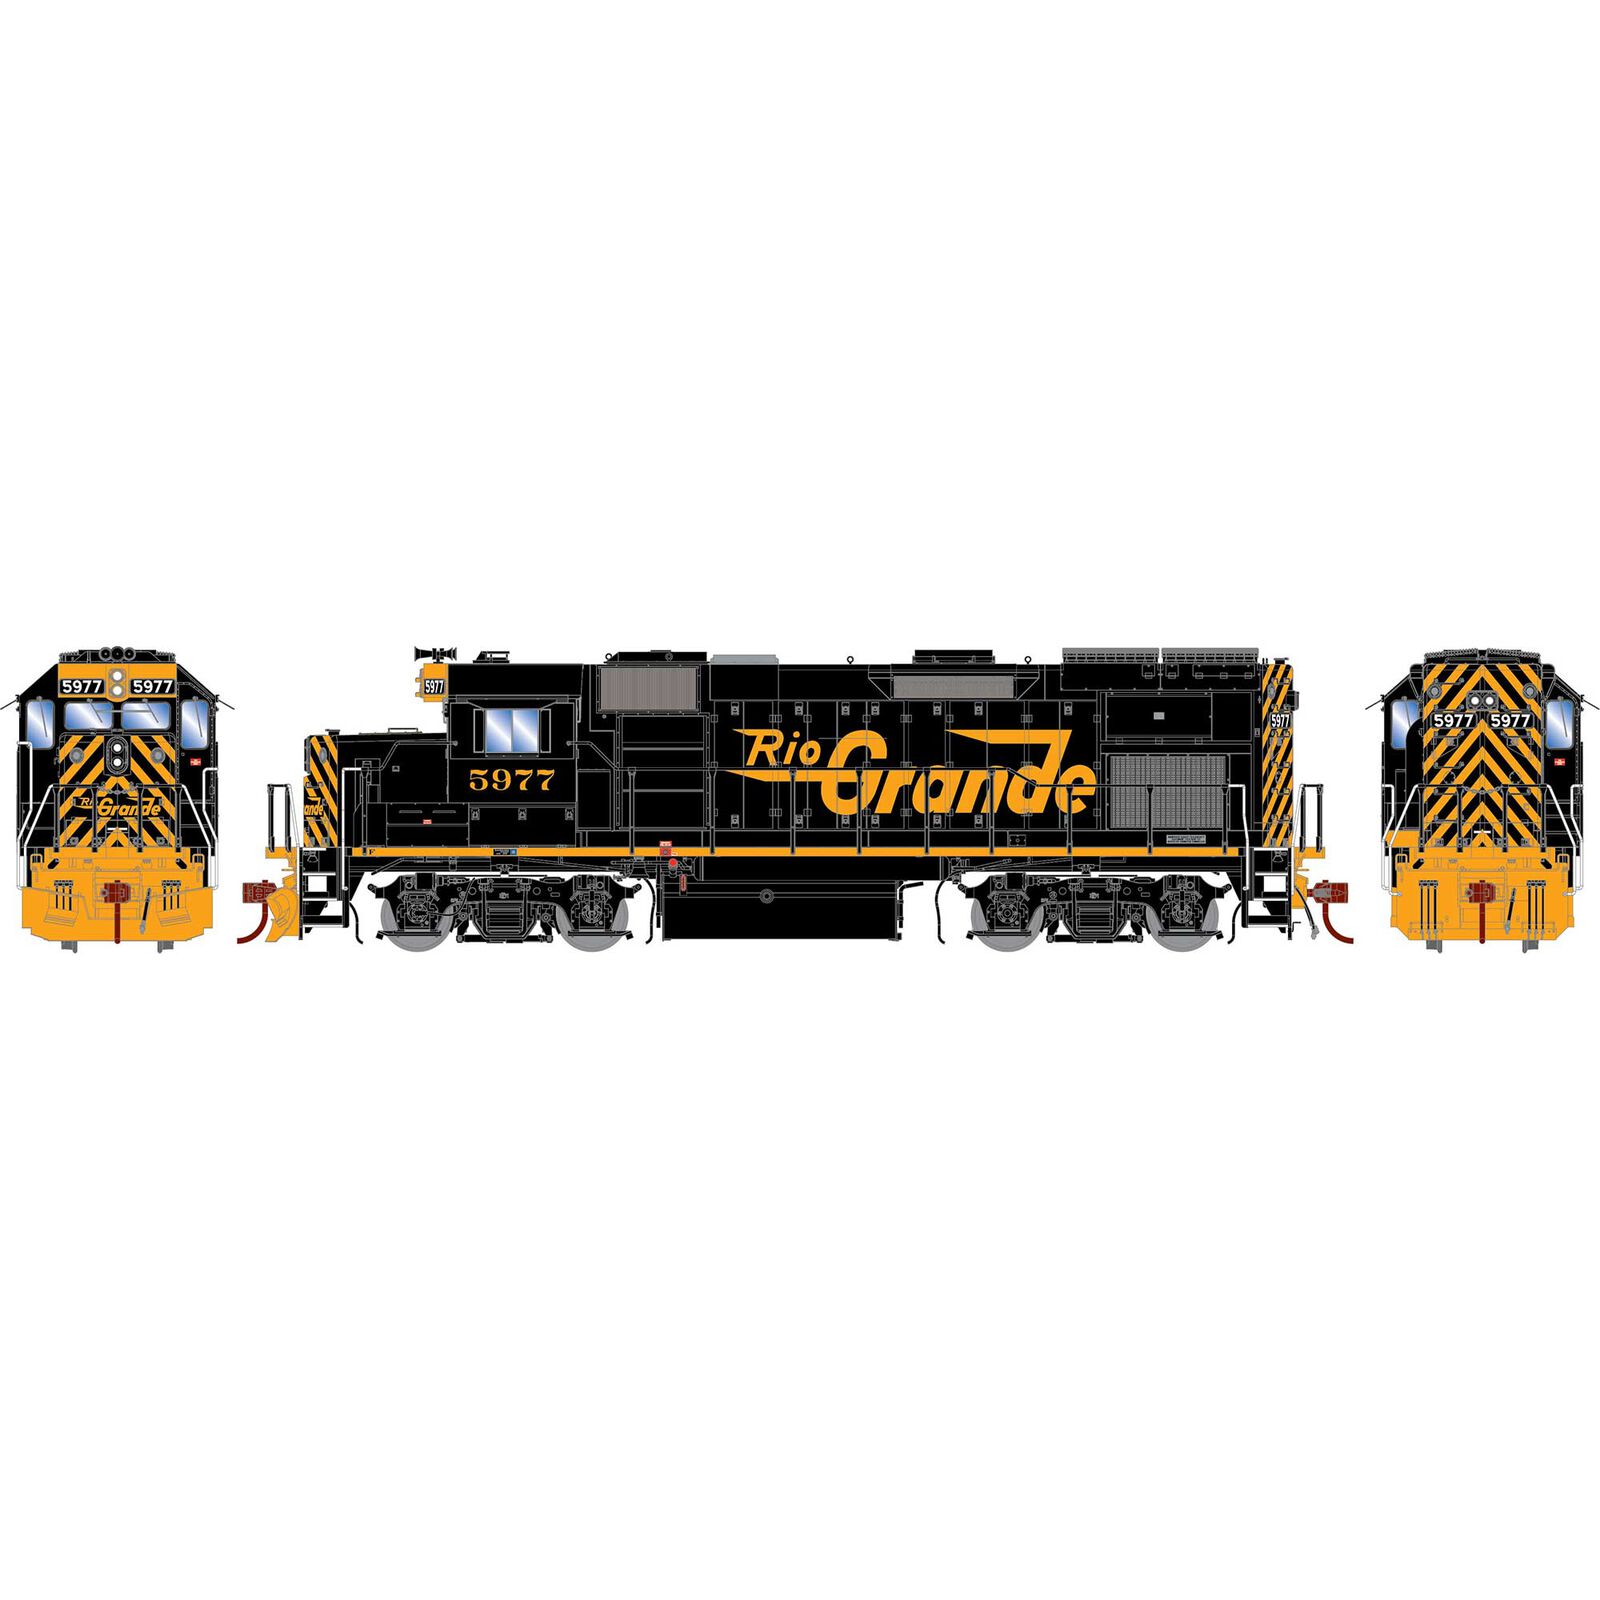 HO GP15T Locomotive with DCC & Sound, Rio Grande #5977